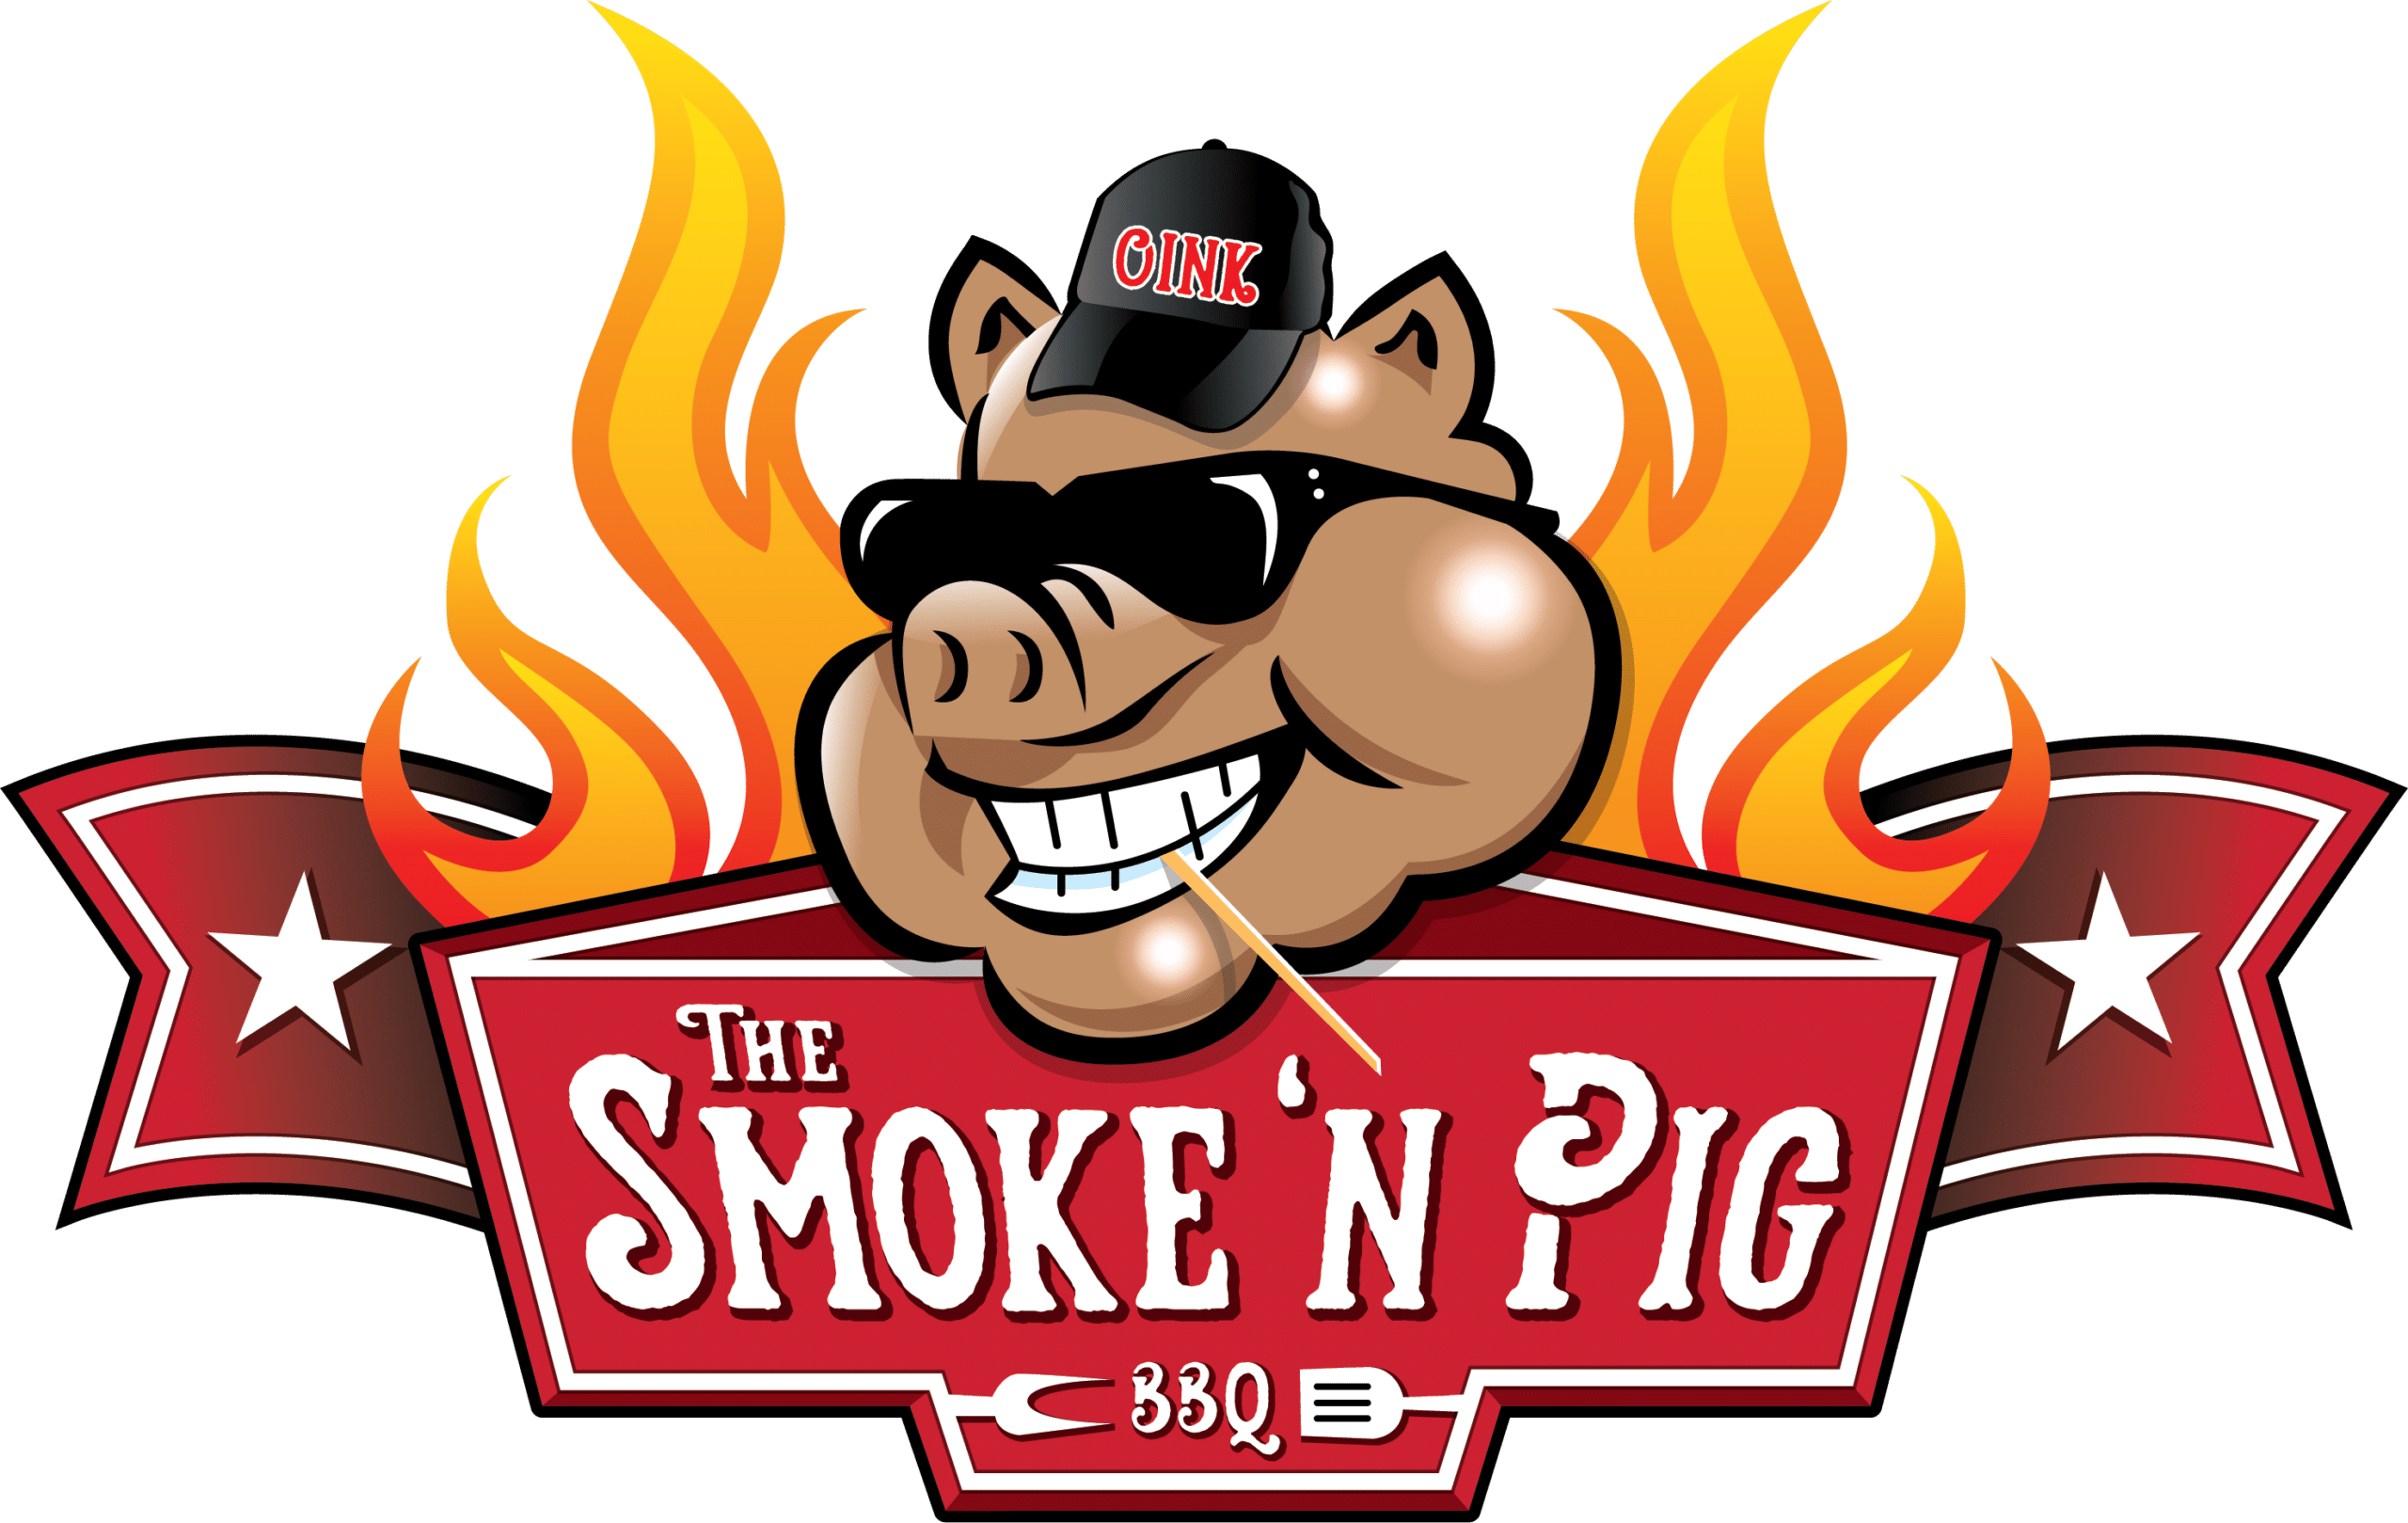 Smoke-n-pig